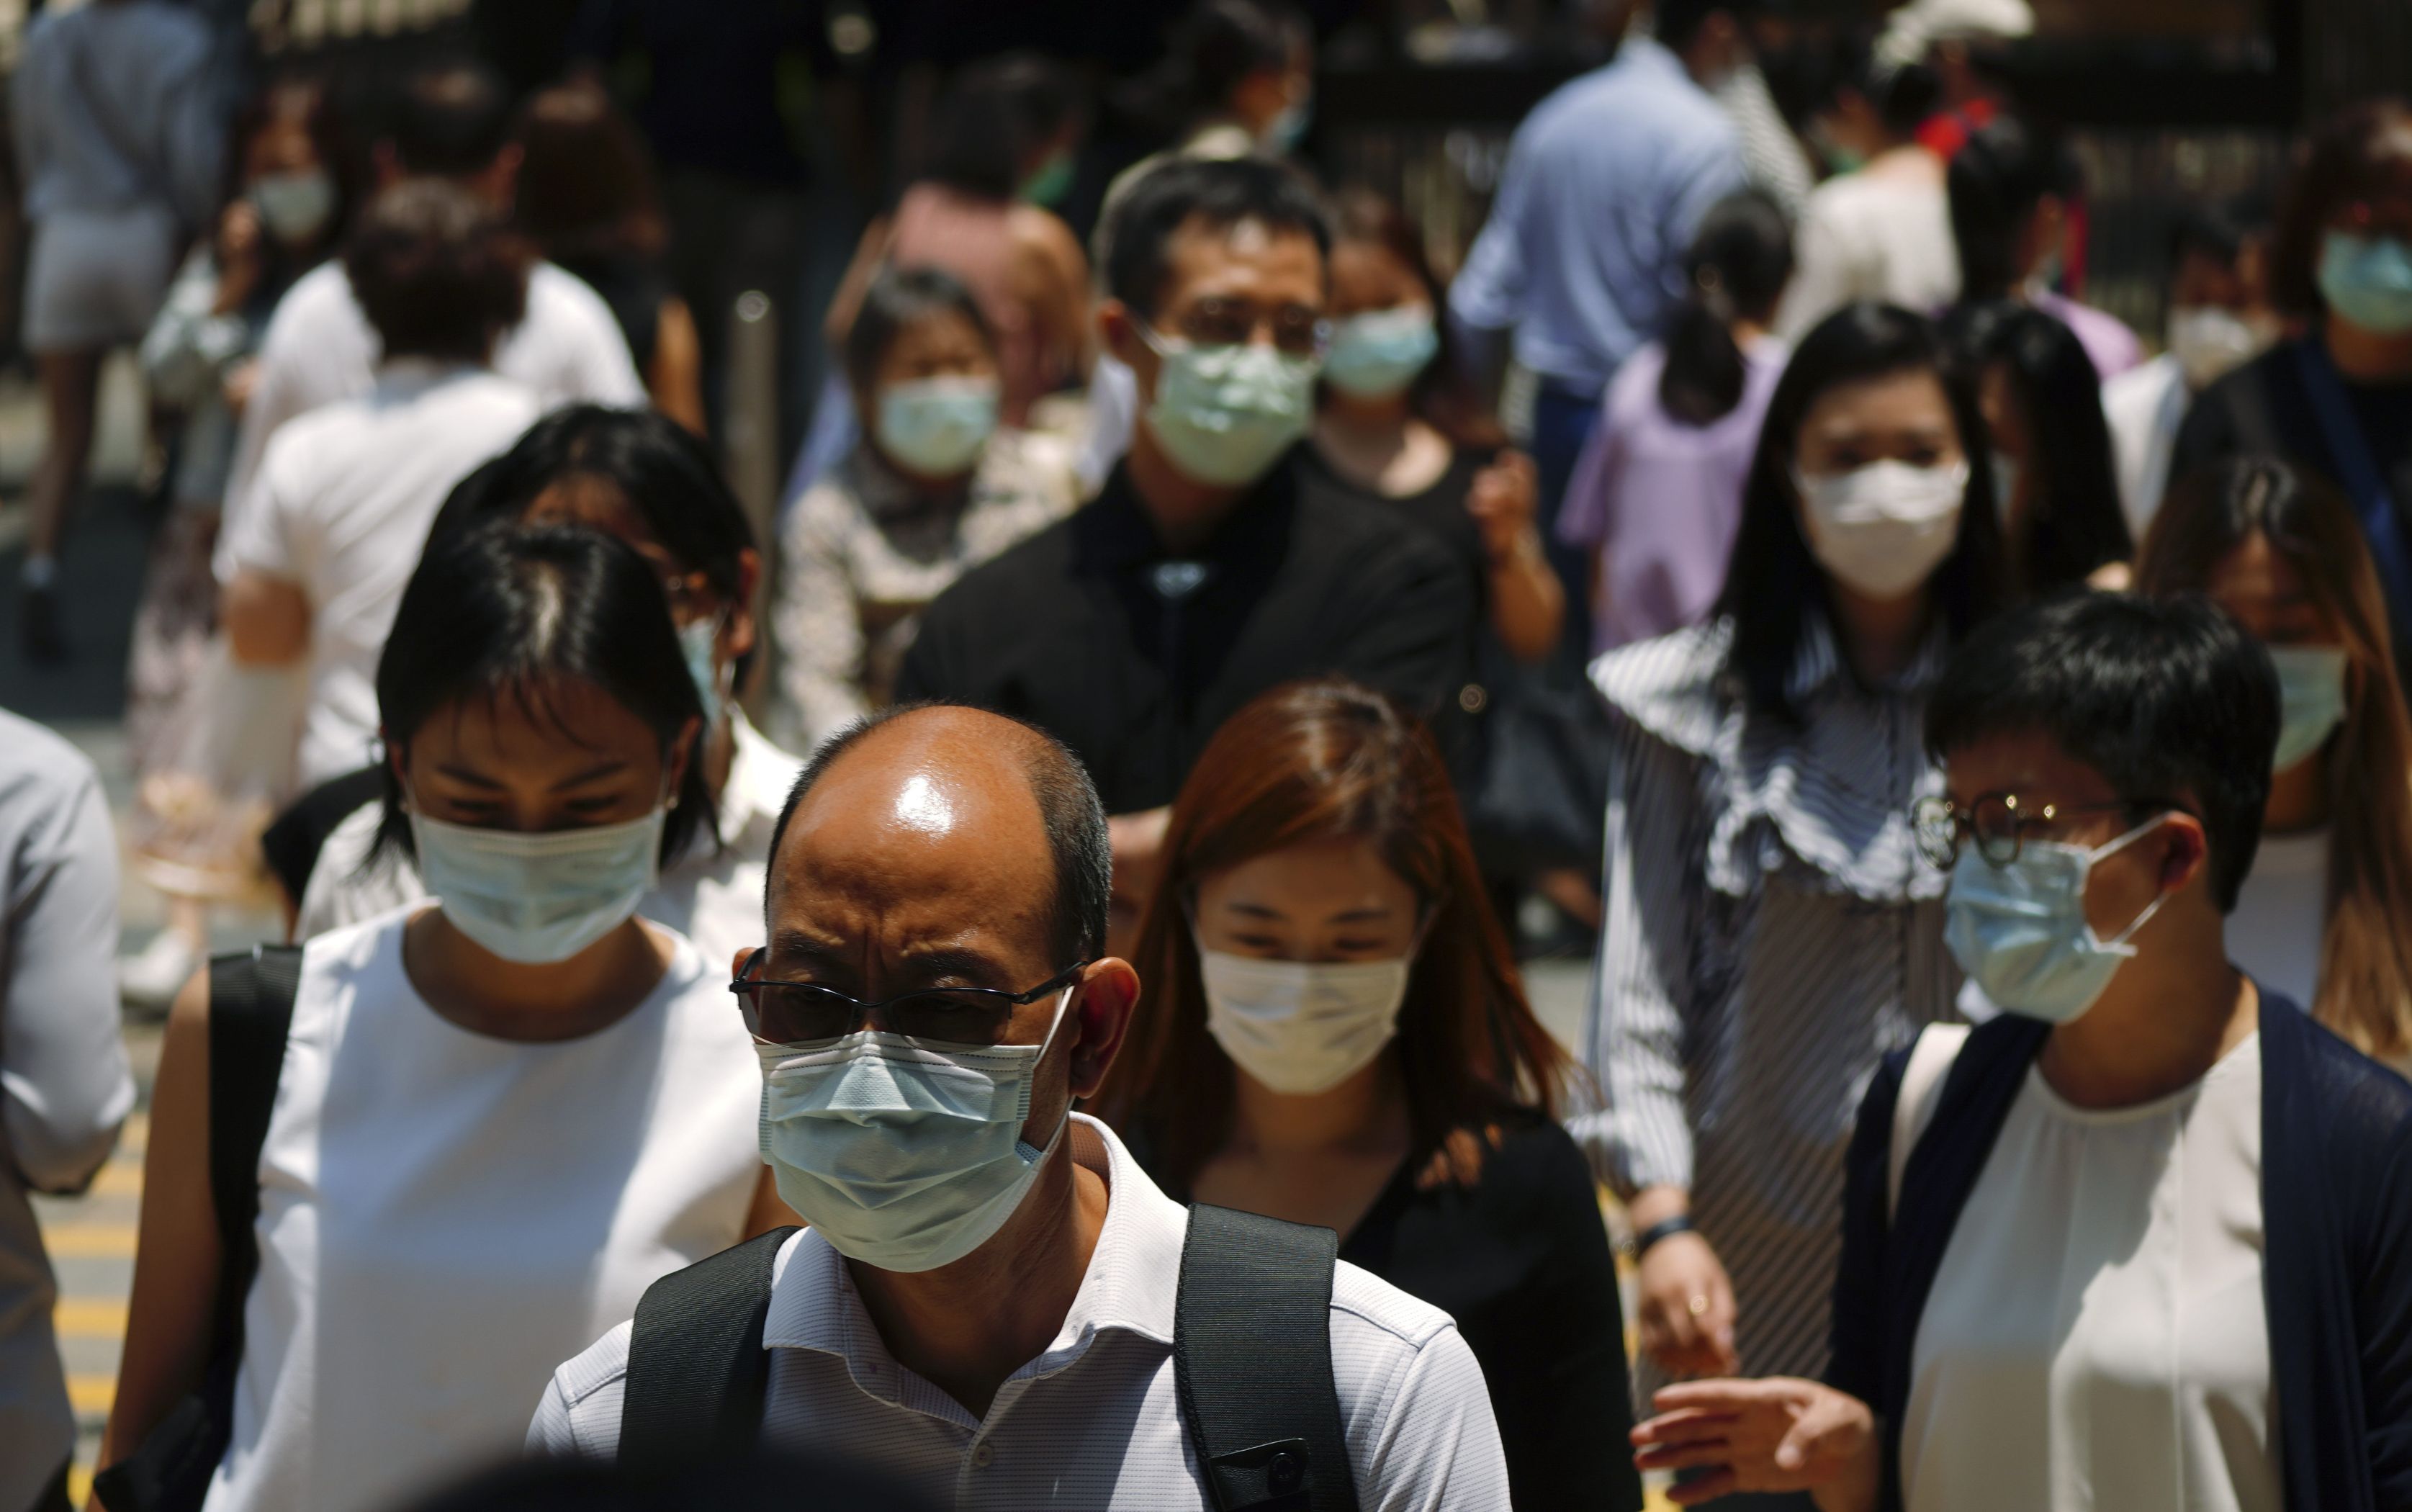 Chinezii au uitat de pandemie: Petrecere cu mii de oameni într-un parc acvatic din Wuhan, epicentrul coronavirusului